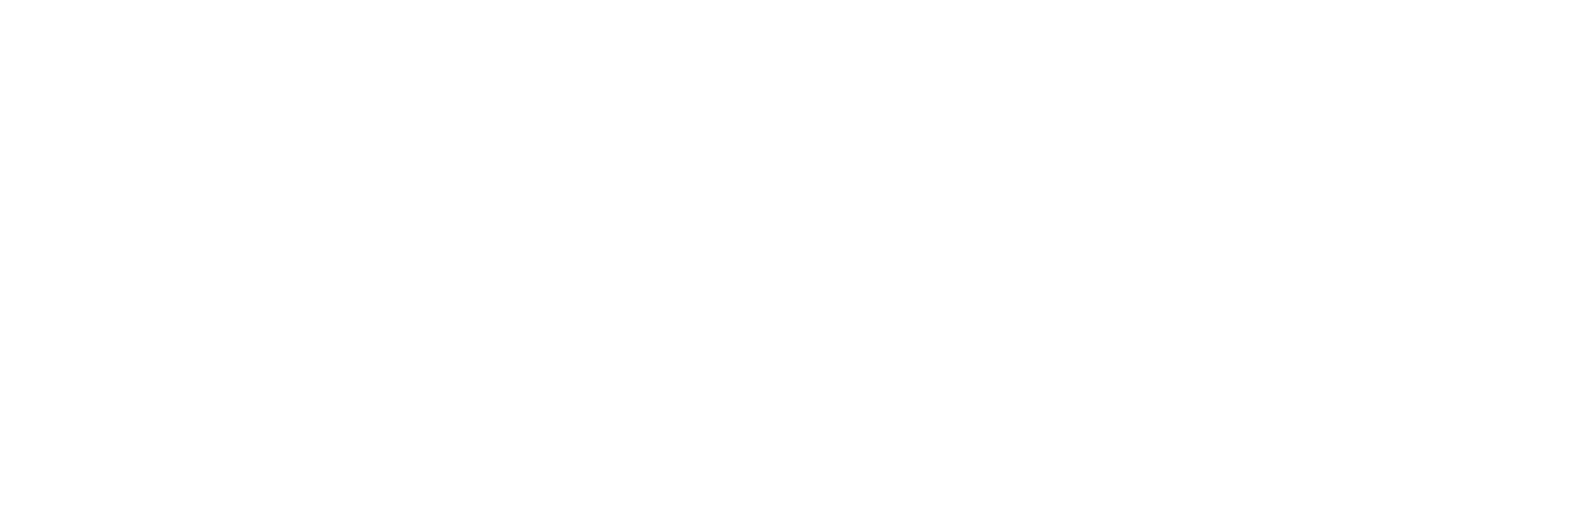 Solar A/S logo pour fonds sombres (PNG transparent)